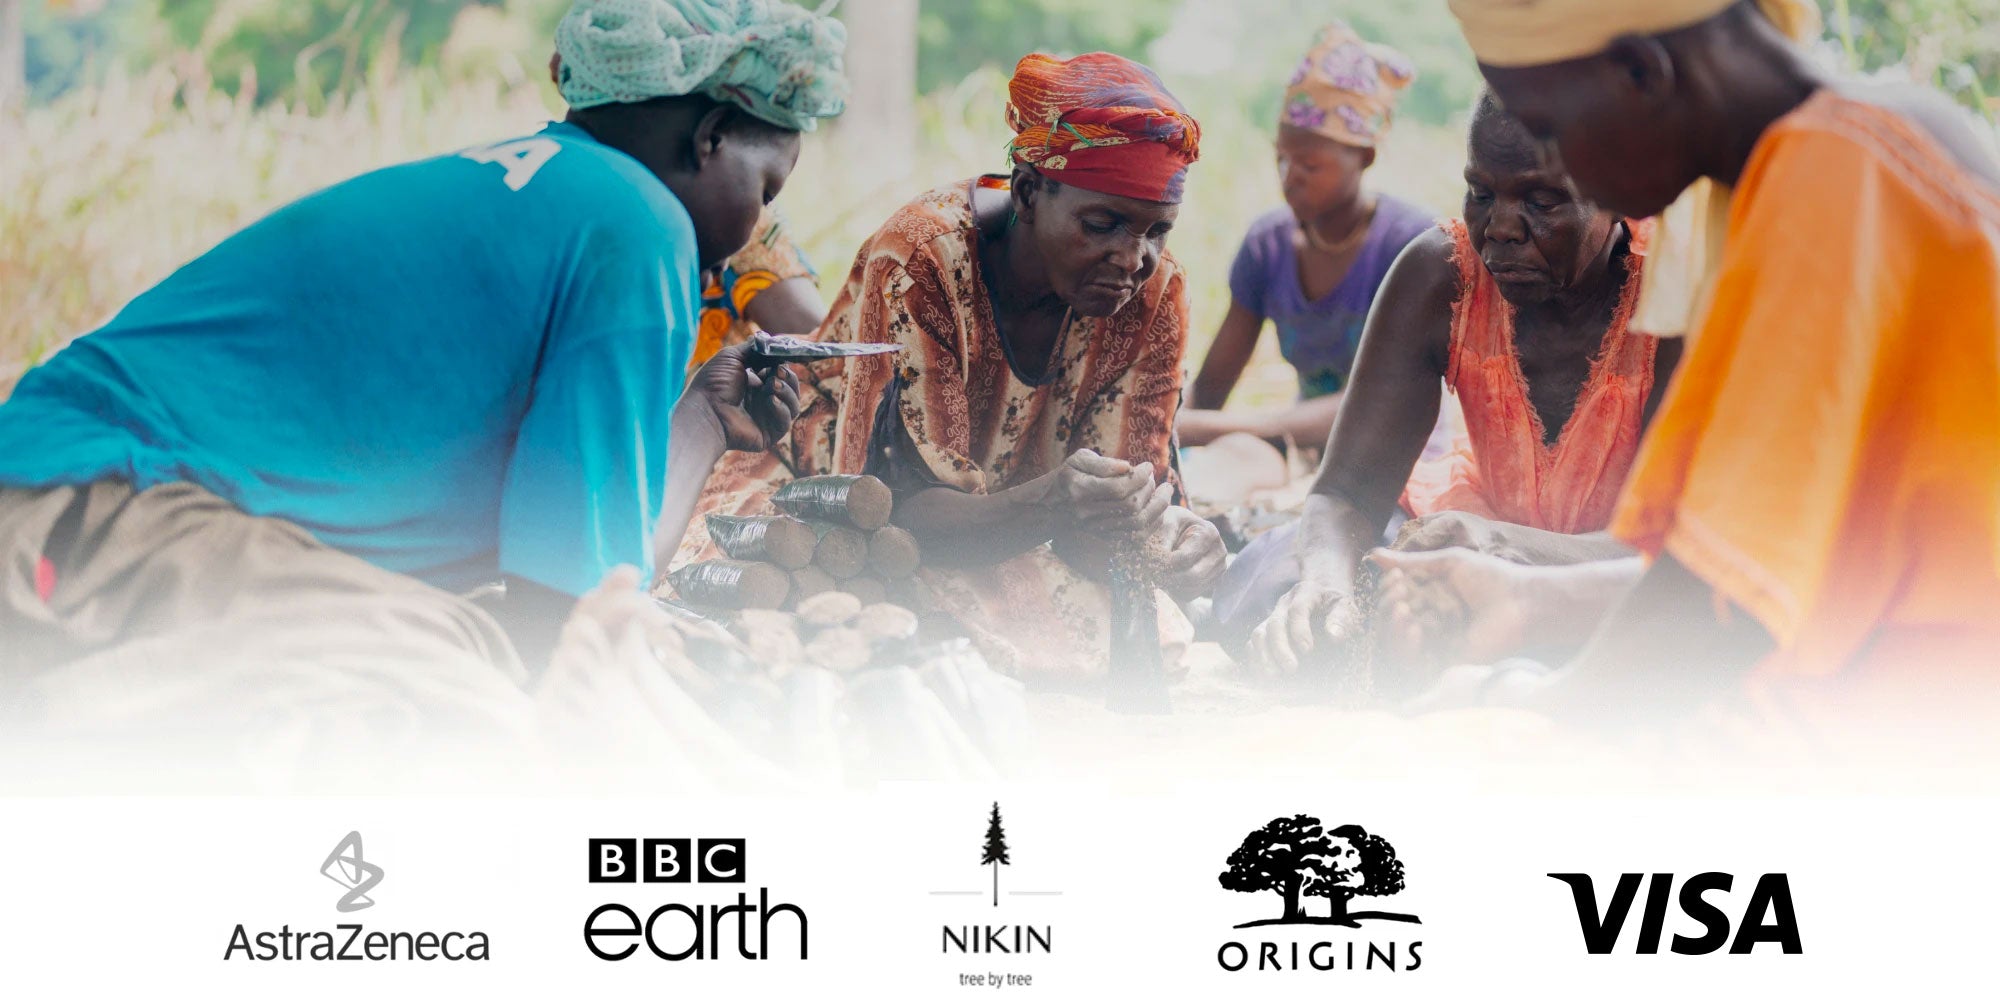 Aztrazeneca | BBC Earth | Nikin | Origins | Visa